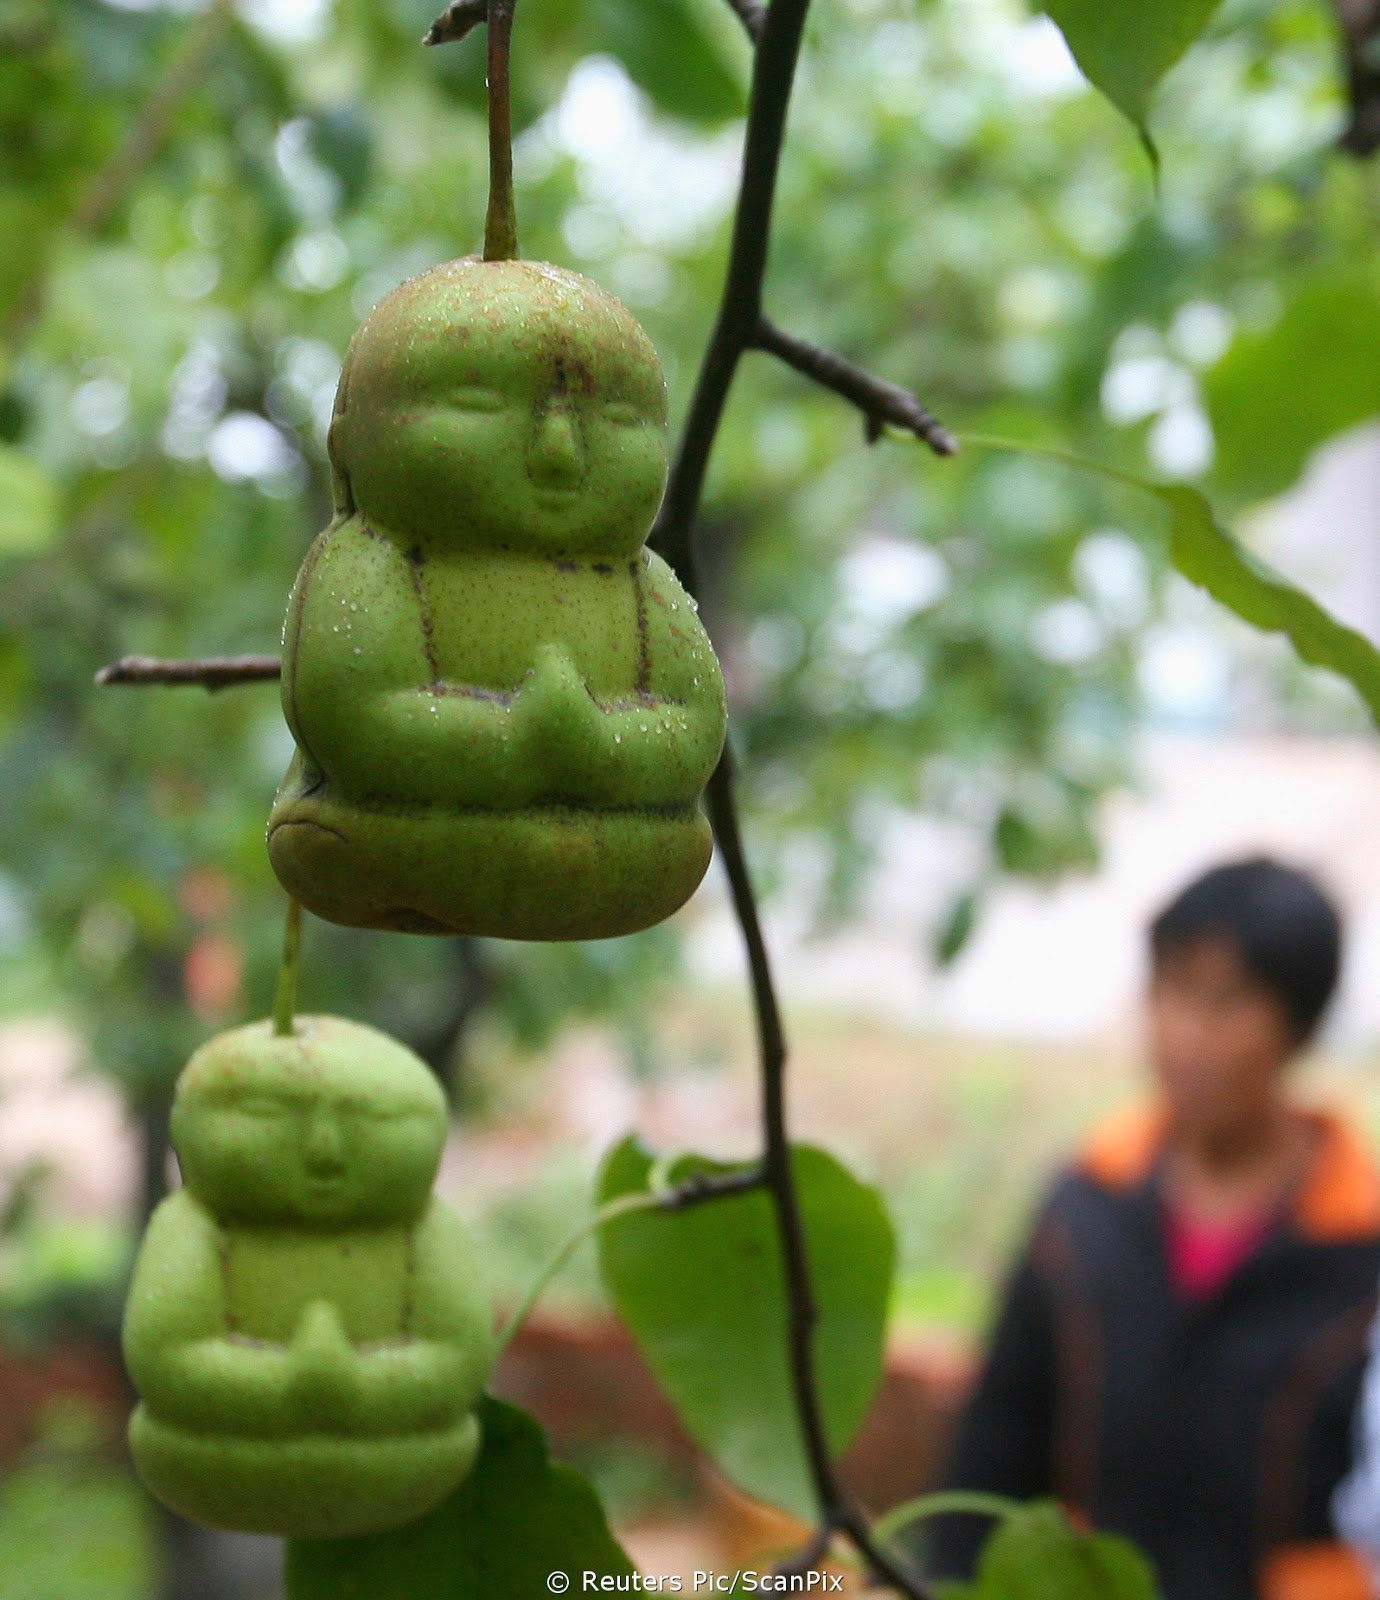 Дерево с плодами похожими. Китайская груша Будда. Китайская груша в форме Будды. Груши в Китае Будда. Груша в форме Будды.